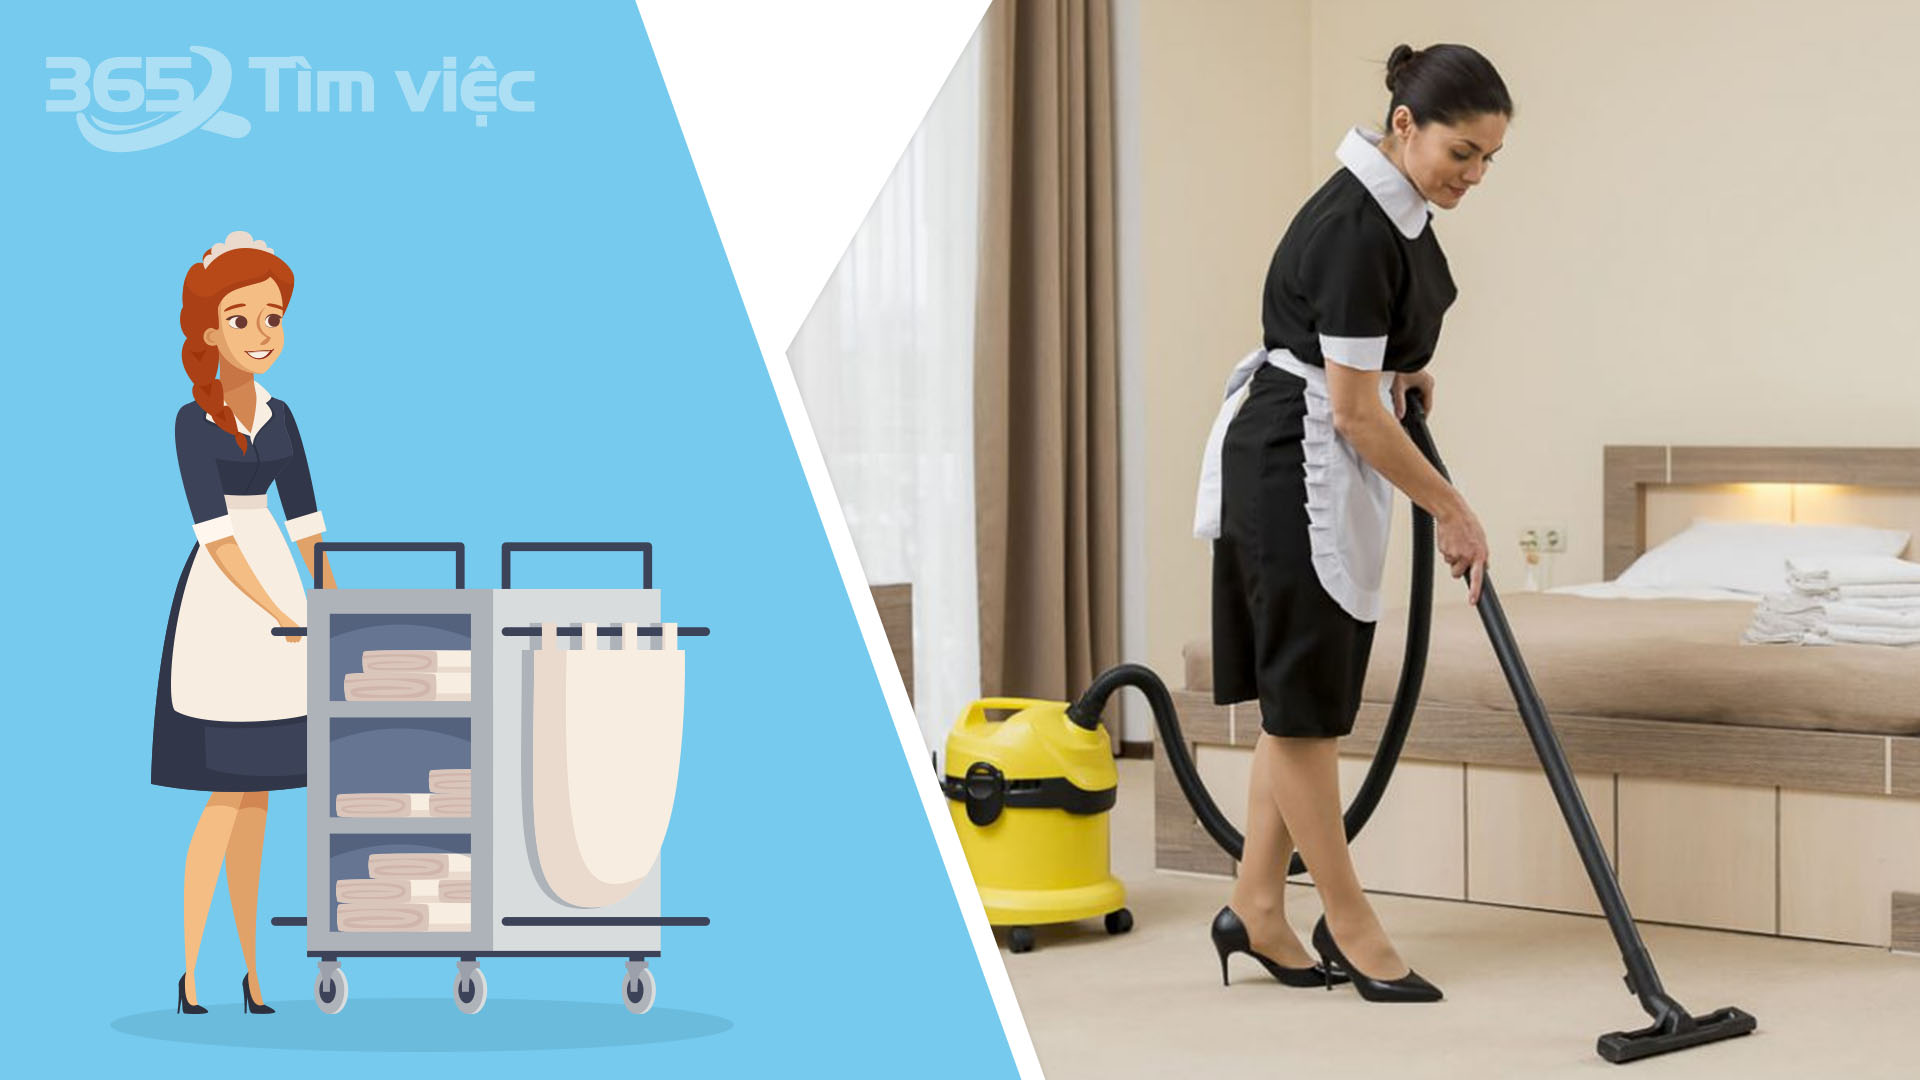 Quy trình dọn phòng khách sạn - Bước 6: Thay đồ vải sạch và làm sạch bụi trên các bề mặt khác nhau